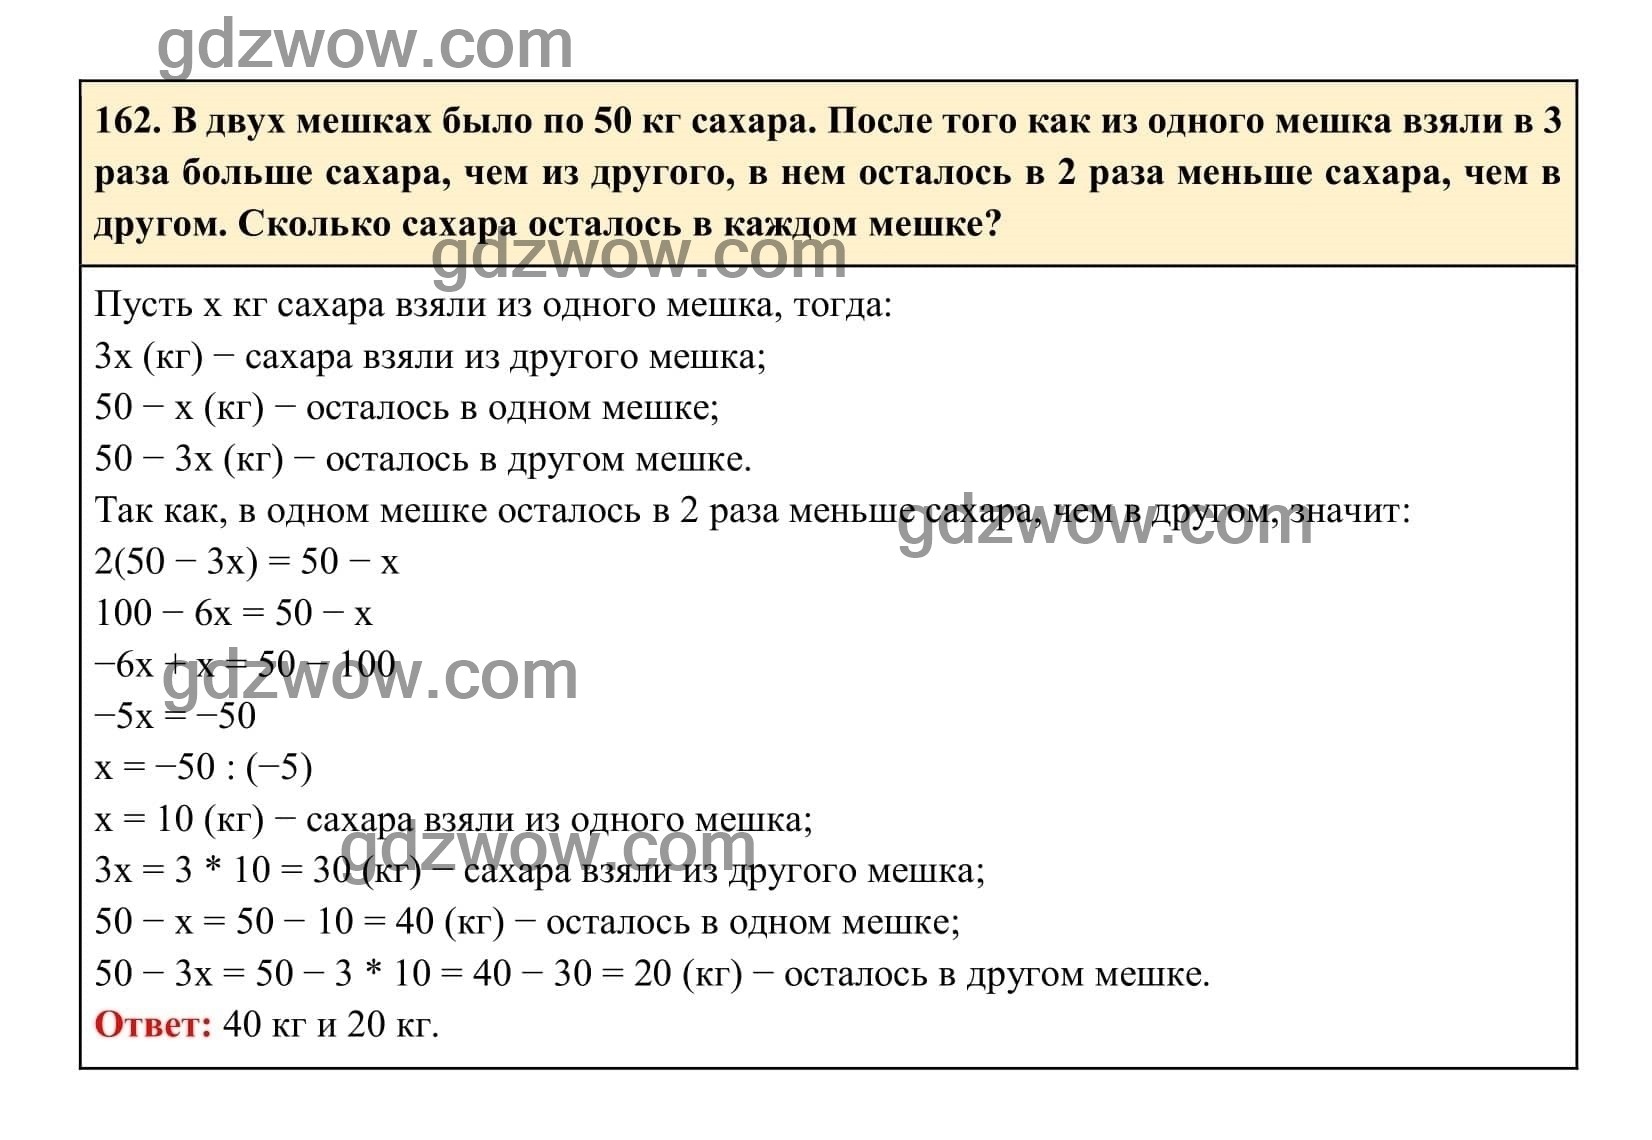 Упражнение 162 - ГДЗ по Алгебре 7 класс Учебник Макарычев (решебник) - GDZwow